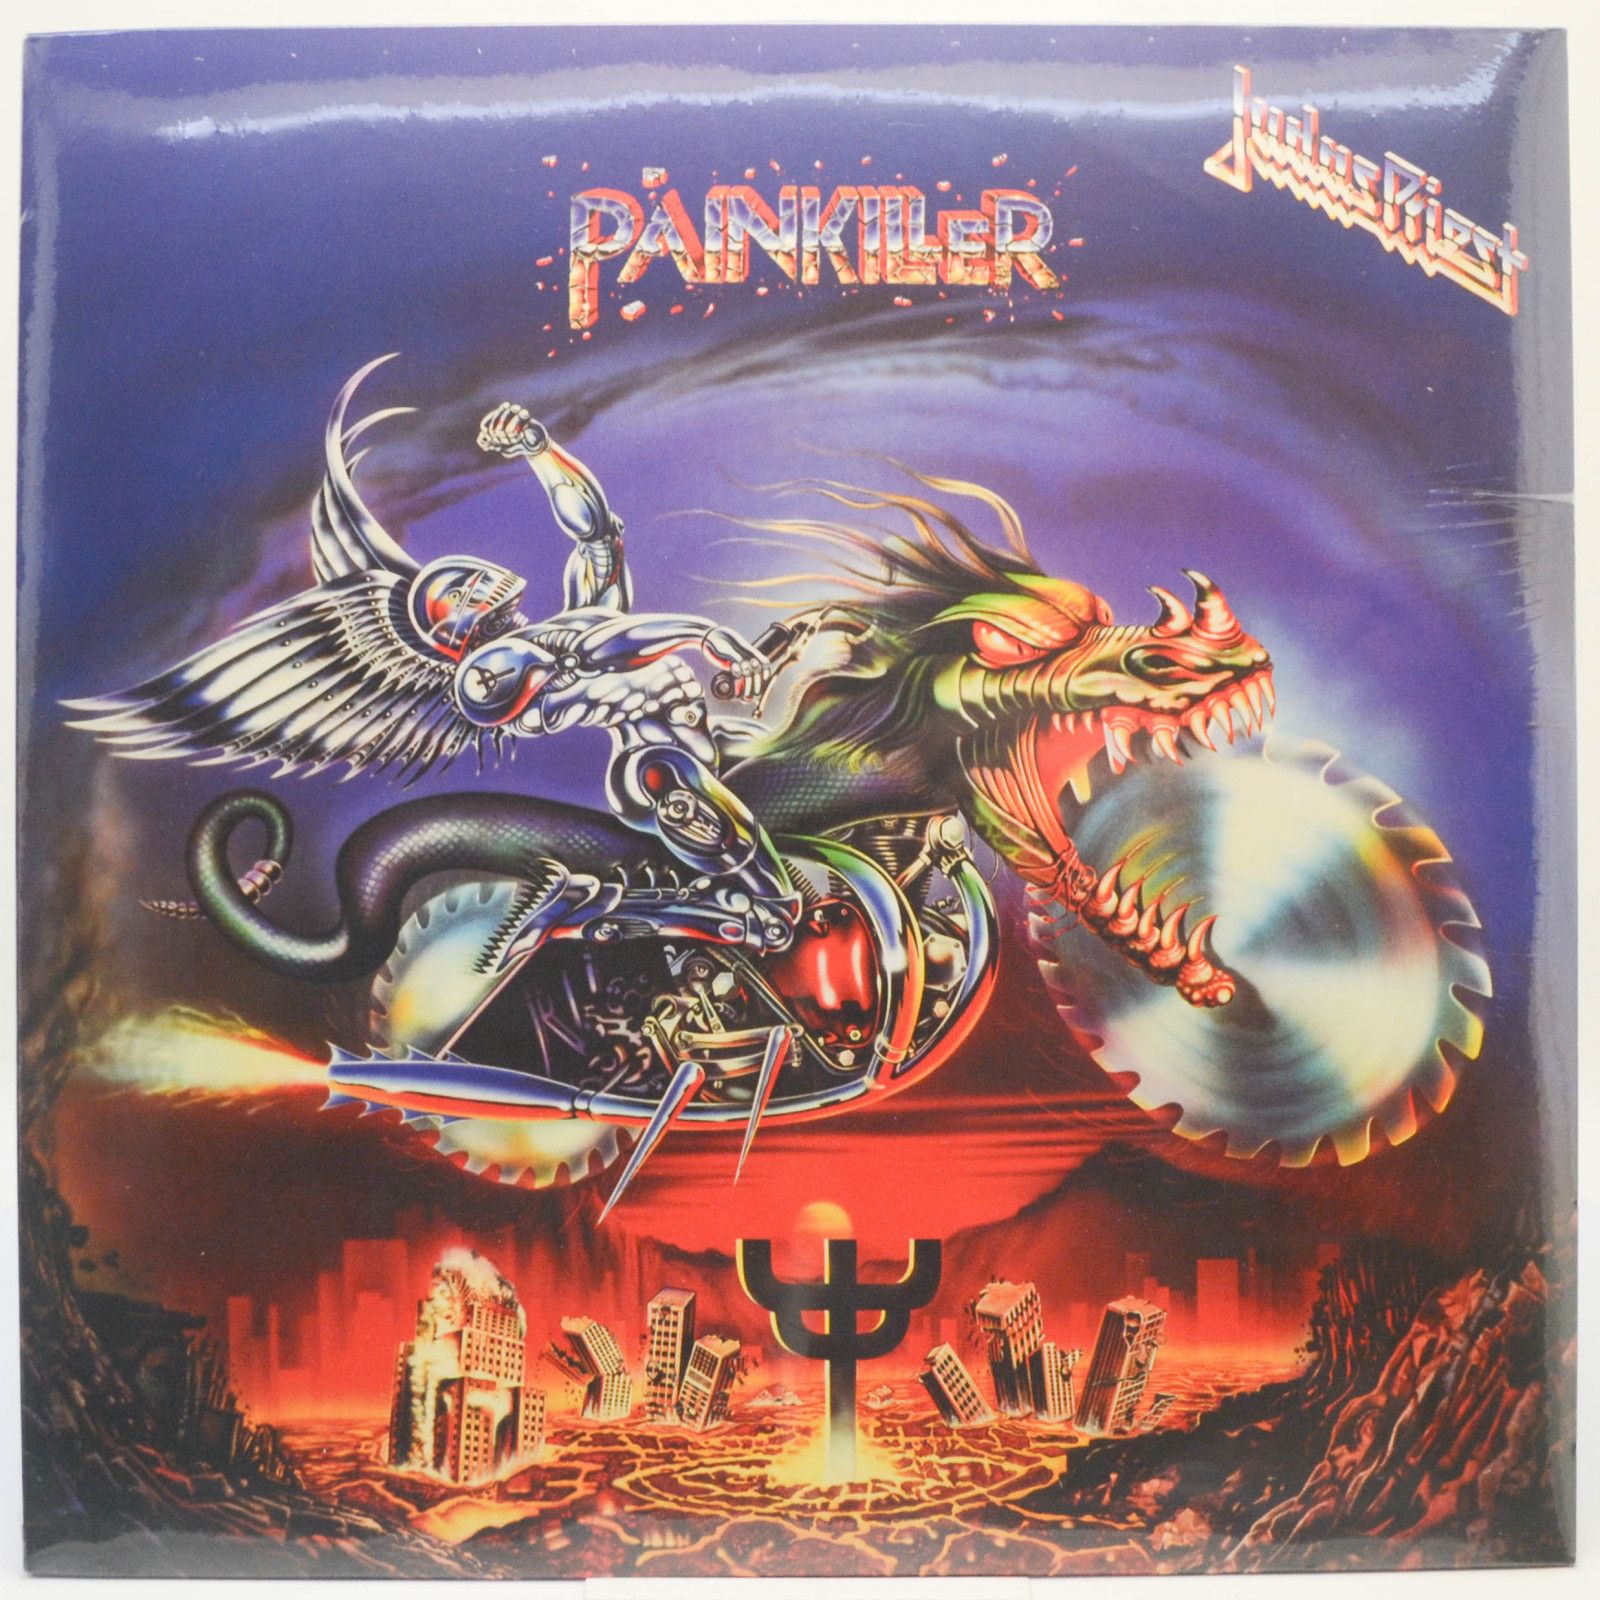 Judas Priest — Painkiller, 1990